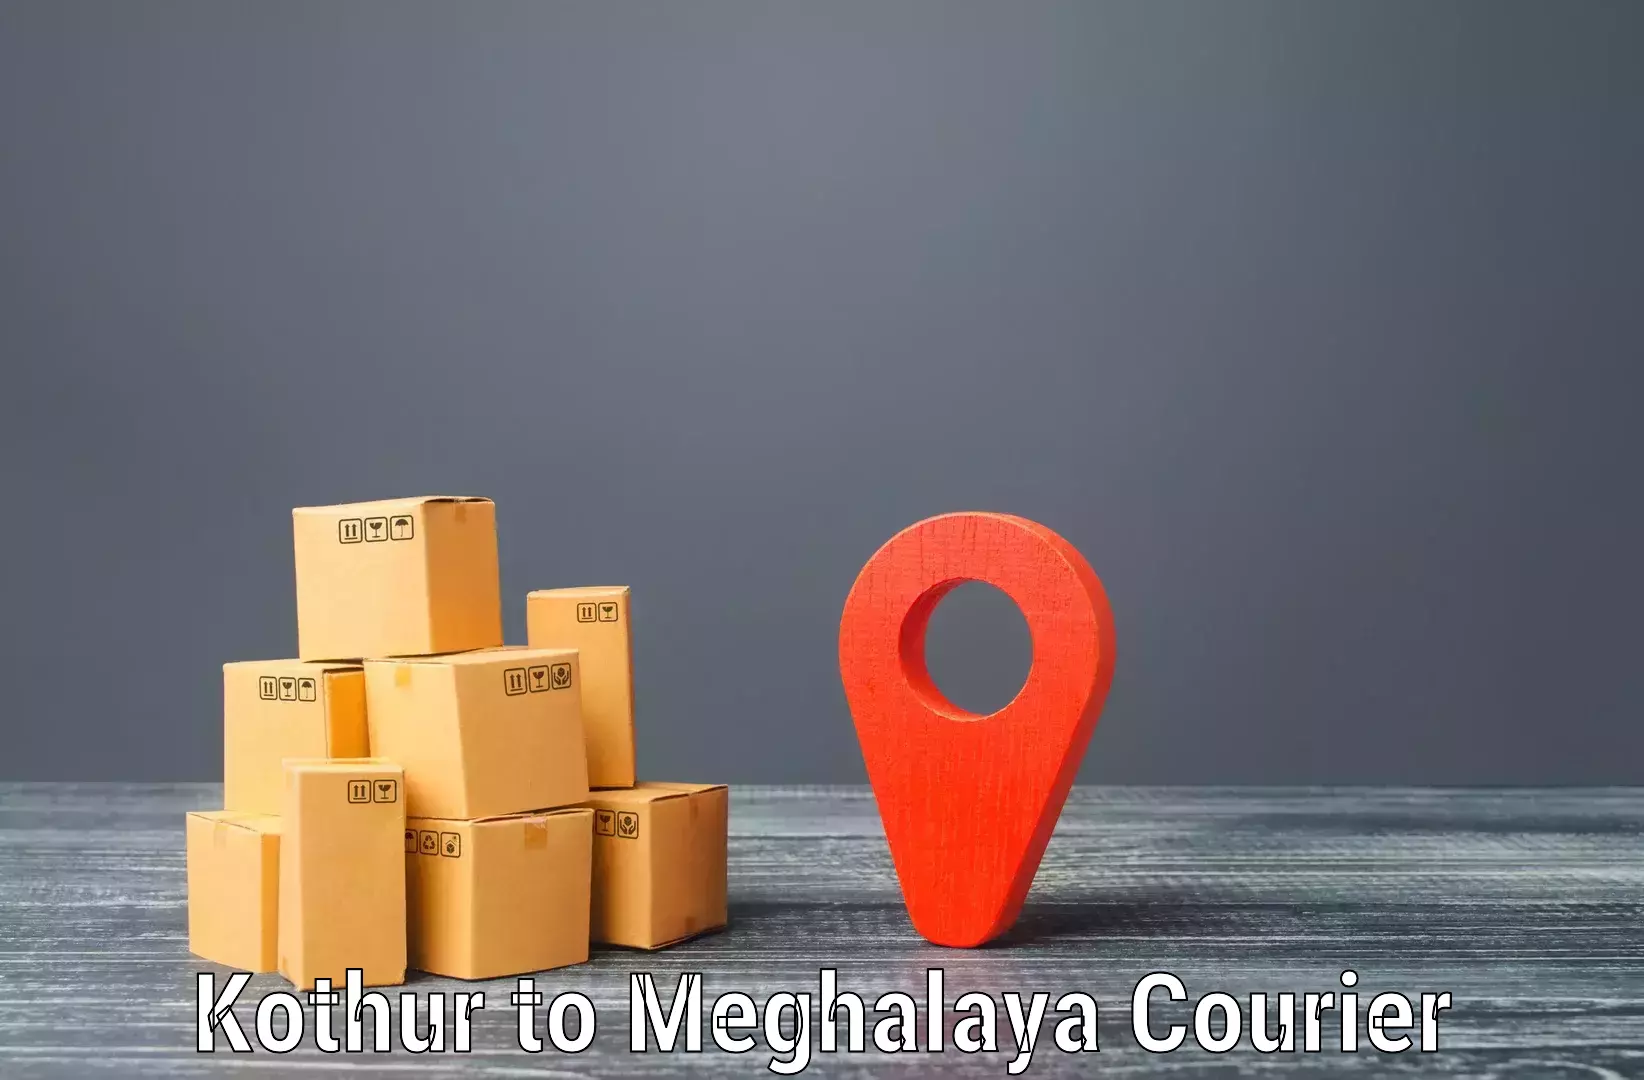 Express shipping Kothur to Meghalaya